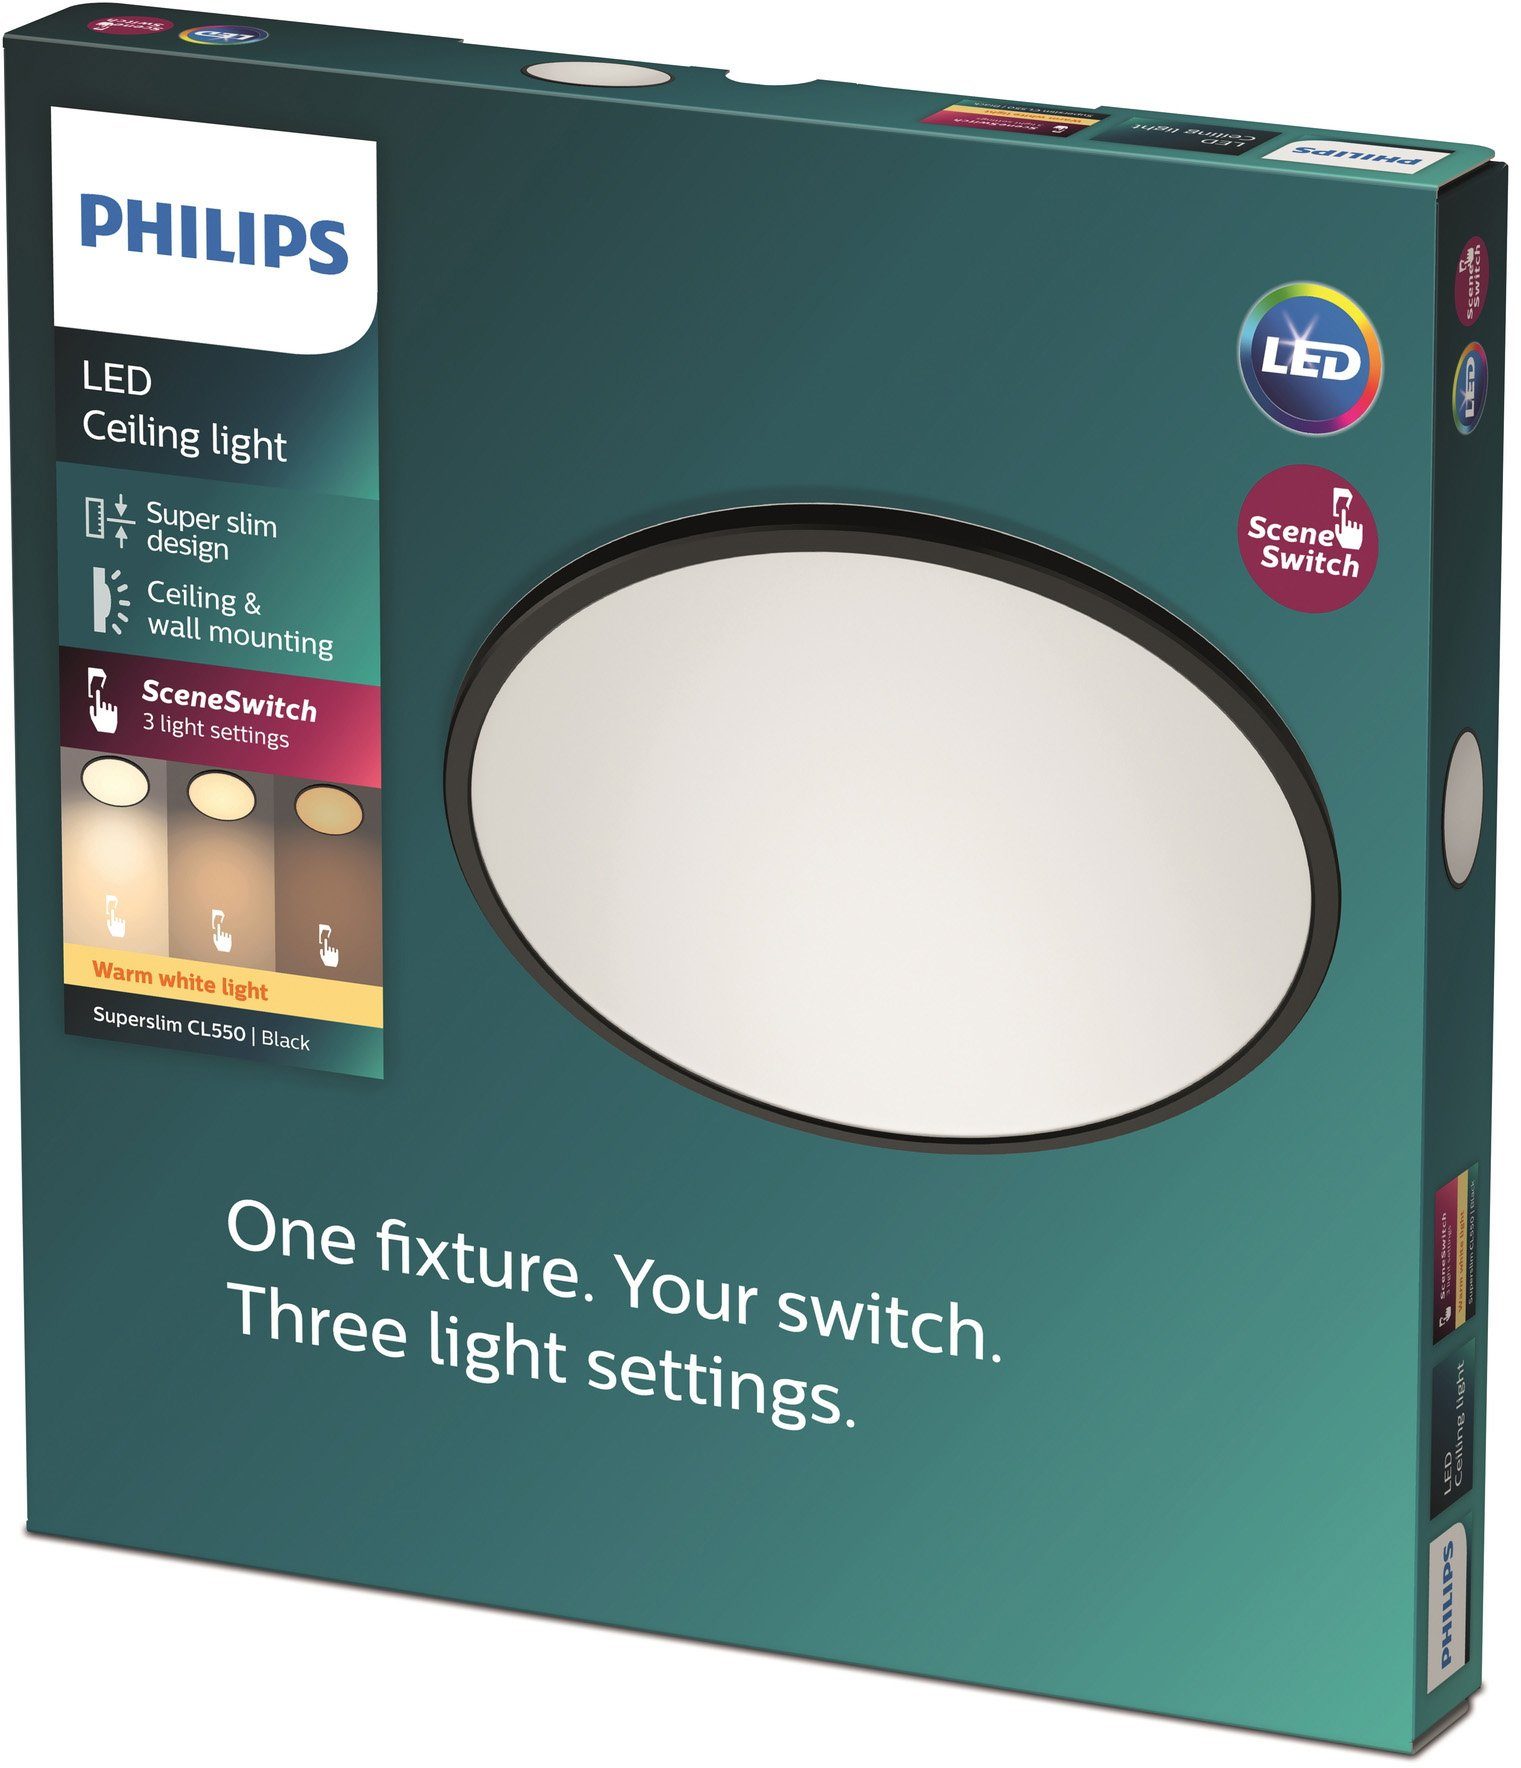 Philips Deckenleuchte SceneSwitch, LED Leuchte schw 3in1 LED Dimmen fest Warmweiß, CL550 DS o integriert, 1300lm